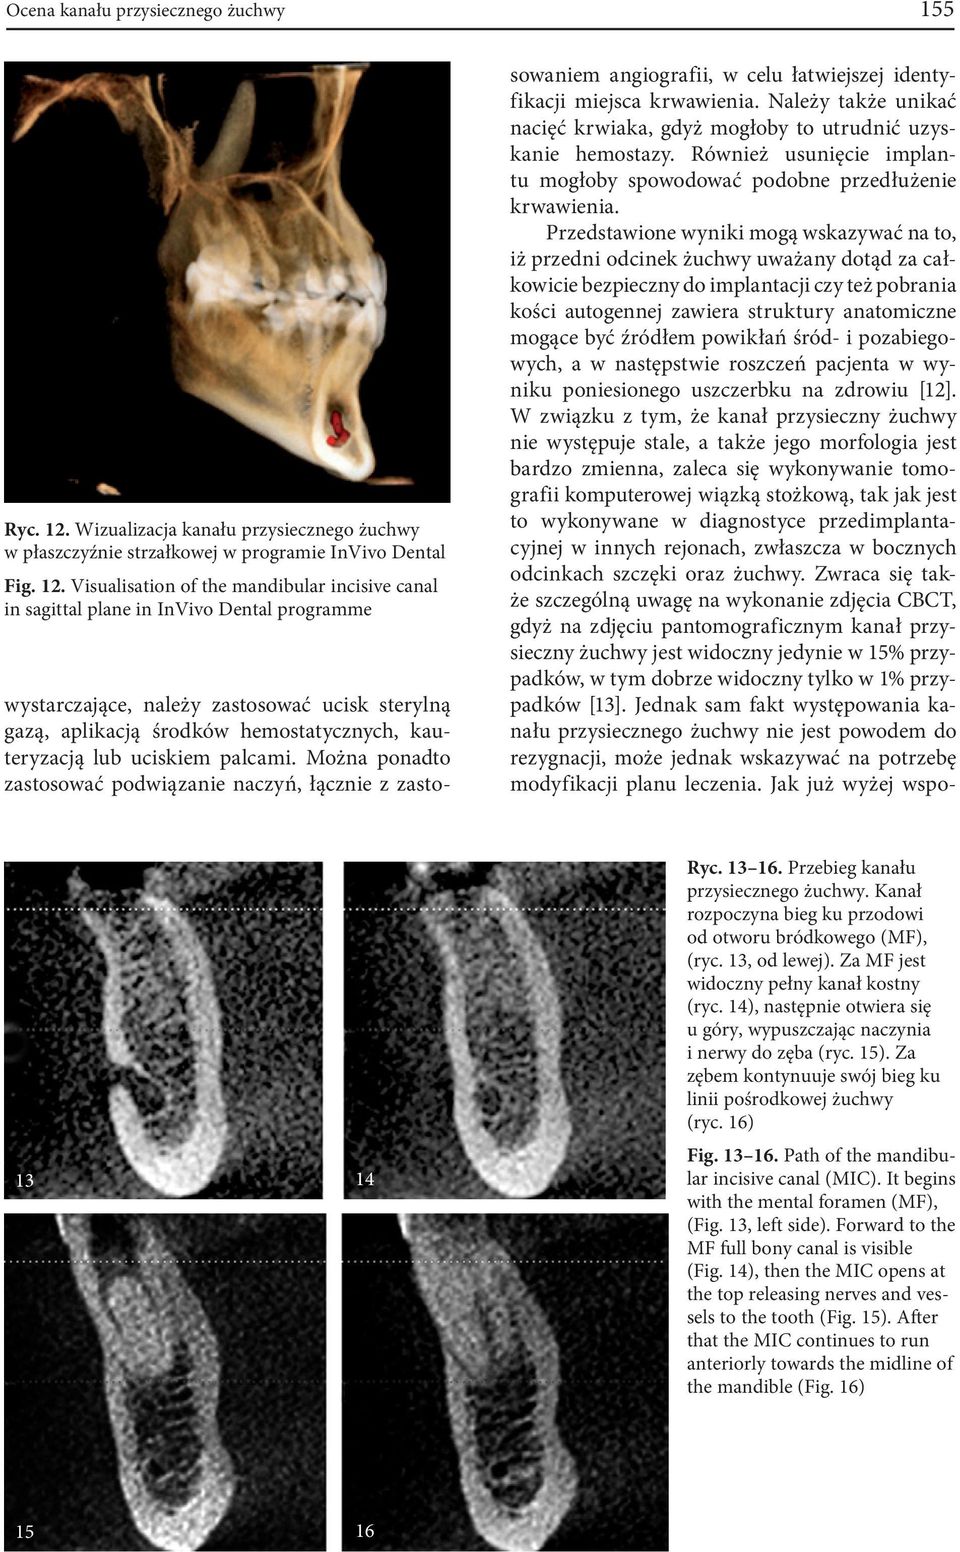 Visualisation of the mandibular incisive canal in sagittal plane in InVivo Dental programme wystarczające, należy zastosować ucisk sterylną gazą, aplikacją środków hemostatycznych, kauteryzacją lub